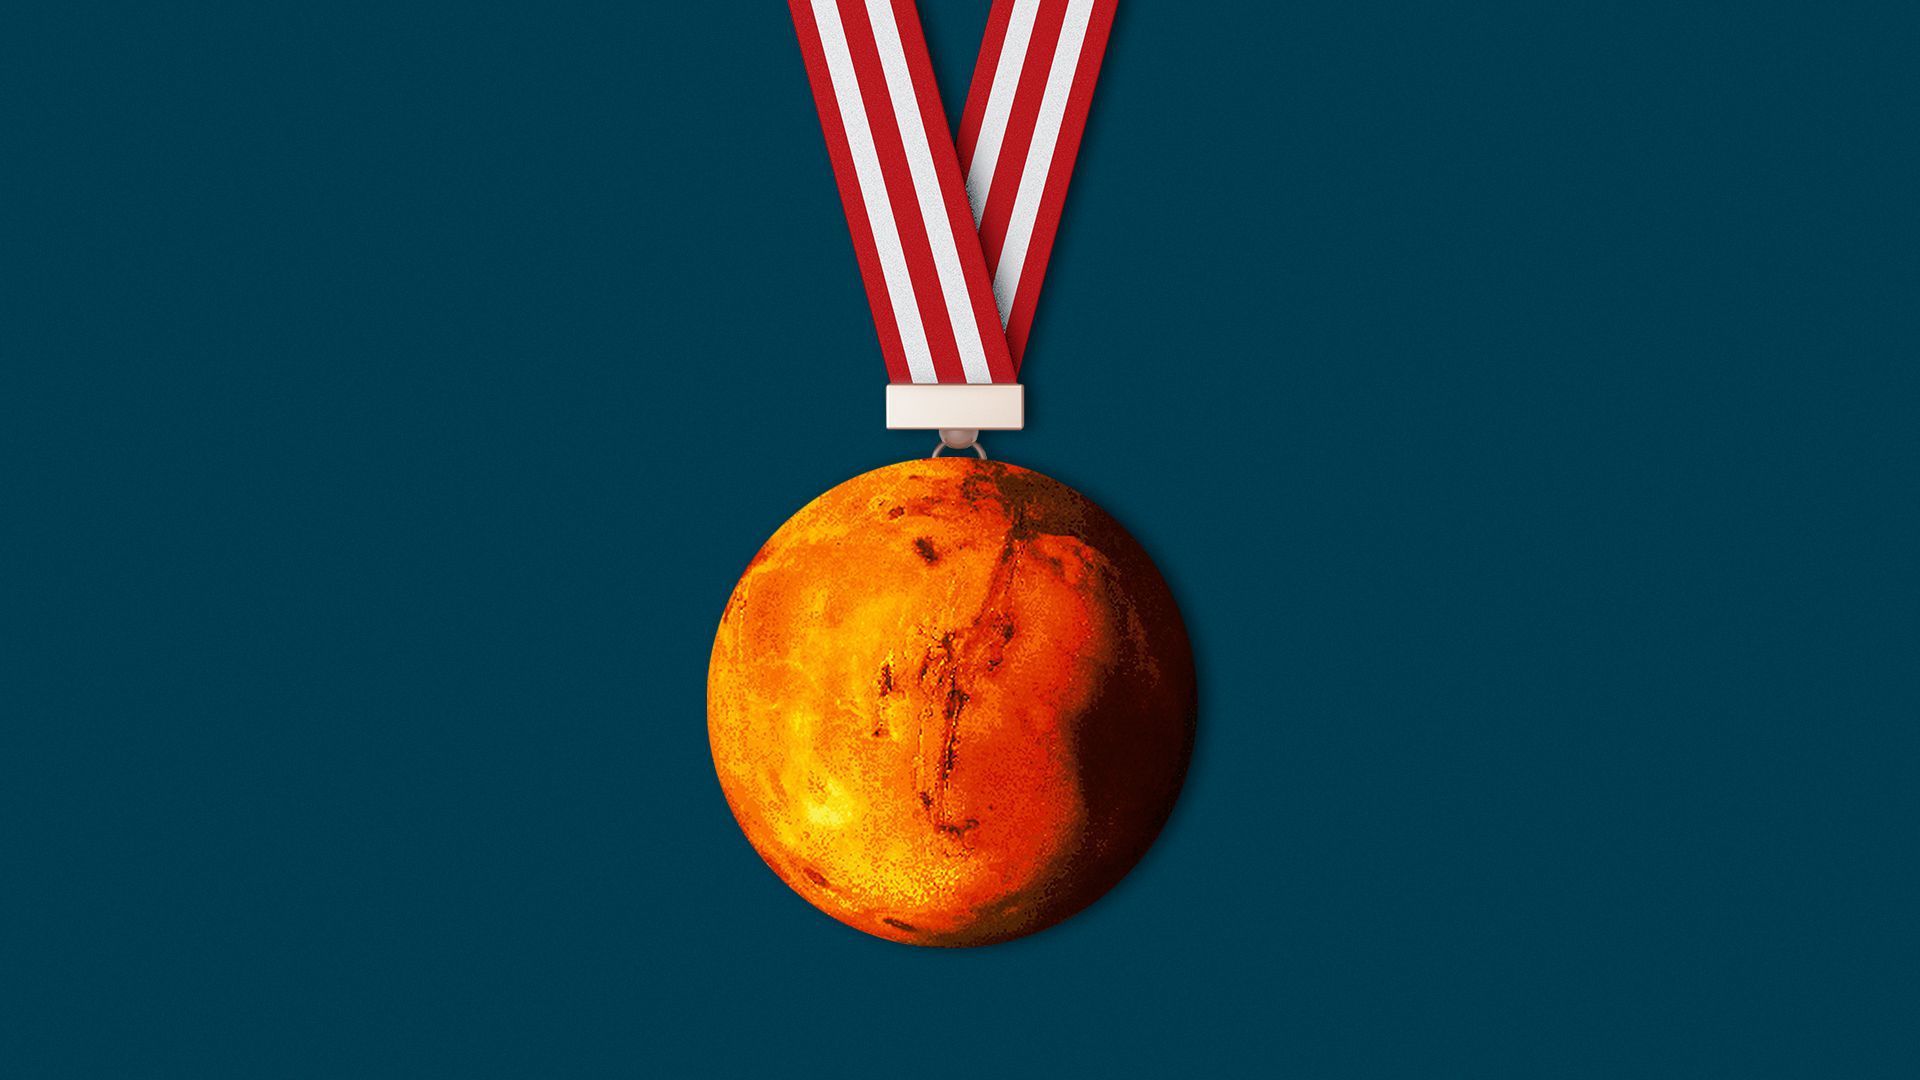 Mars as a medal